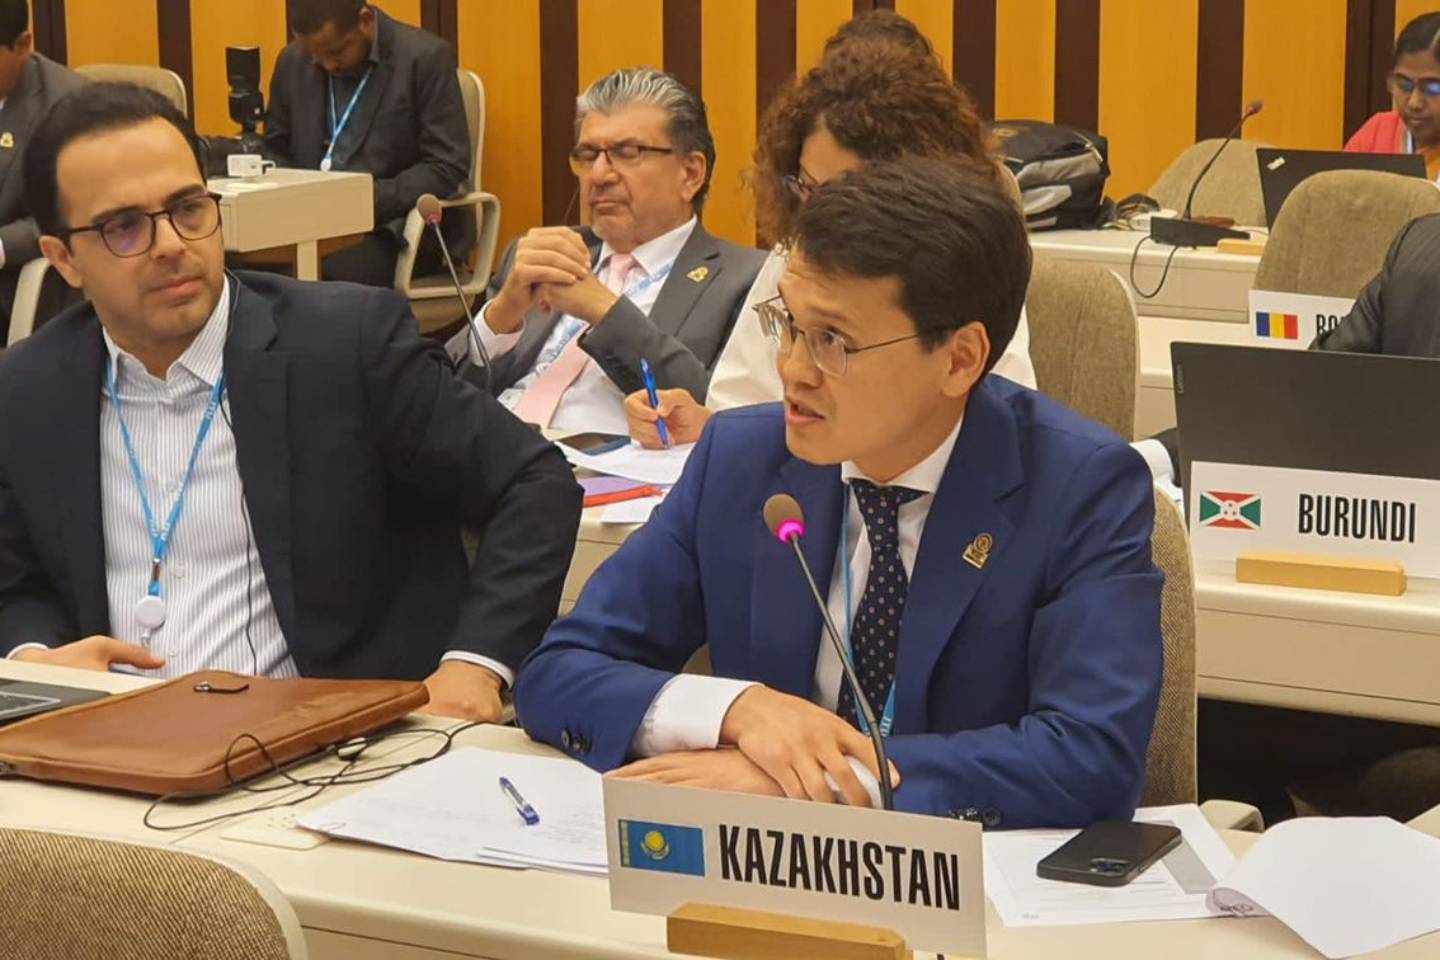 Новости мира / Политика в мире / Казахстан предложил создать общий шлюз государственных услуг для стран мира